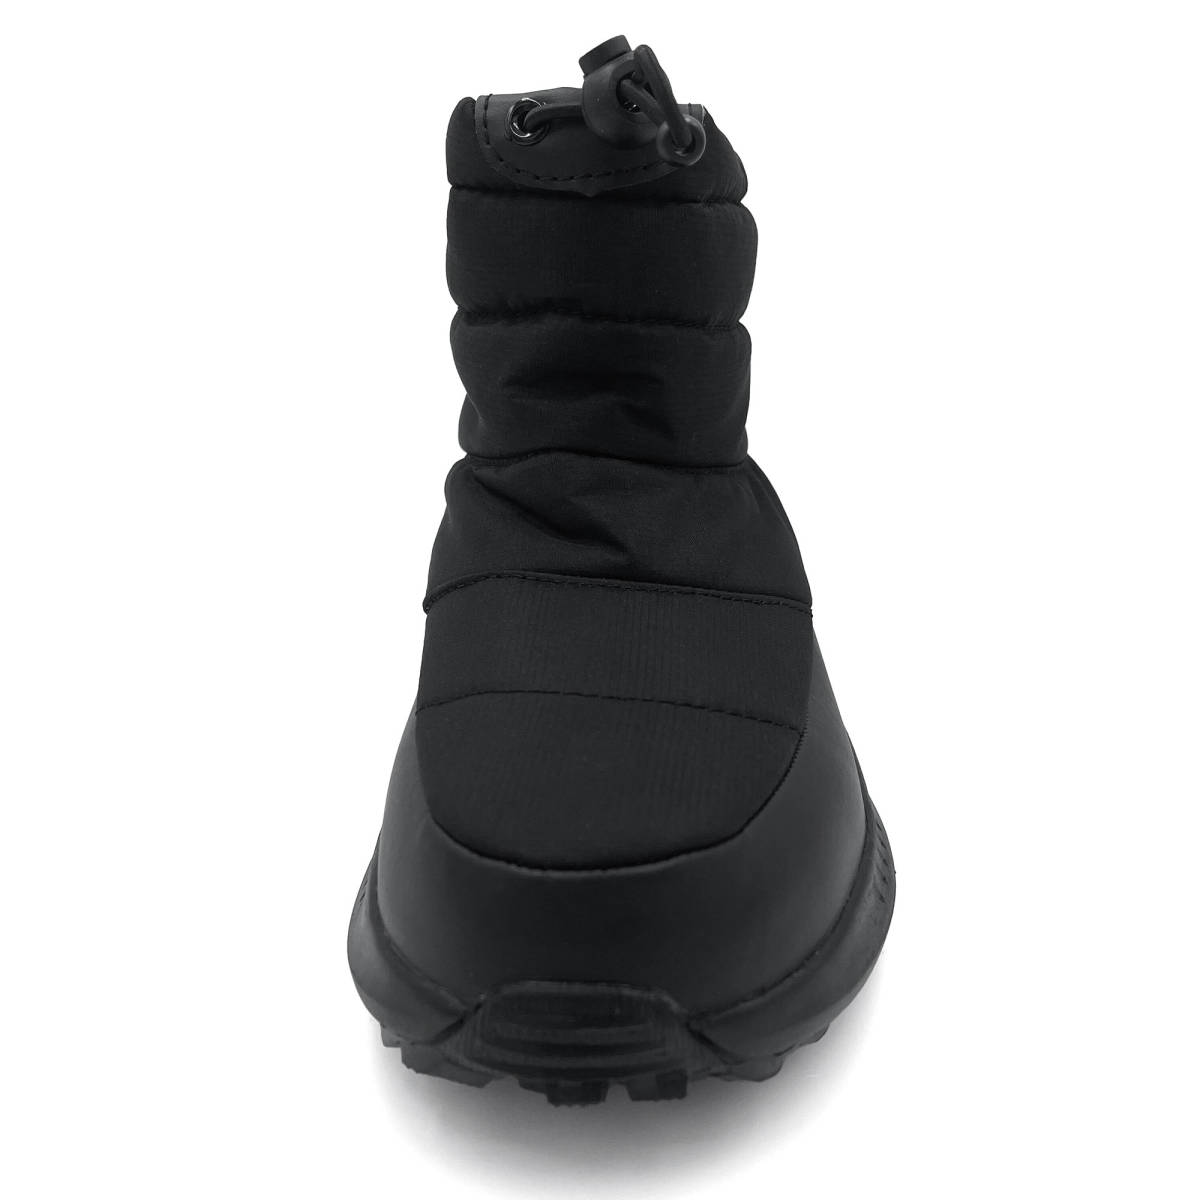  новый товар бесплатная доставка для мужчин и женщин 27.0cm 27cmamojiAMOJI боты спортивные туфли черный черный чёрный YF801 YF23801 защищающий от холода водоотталкивающий снег обувь снег 